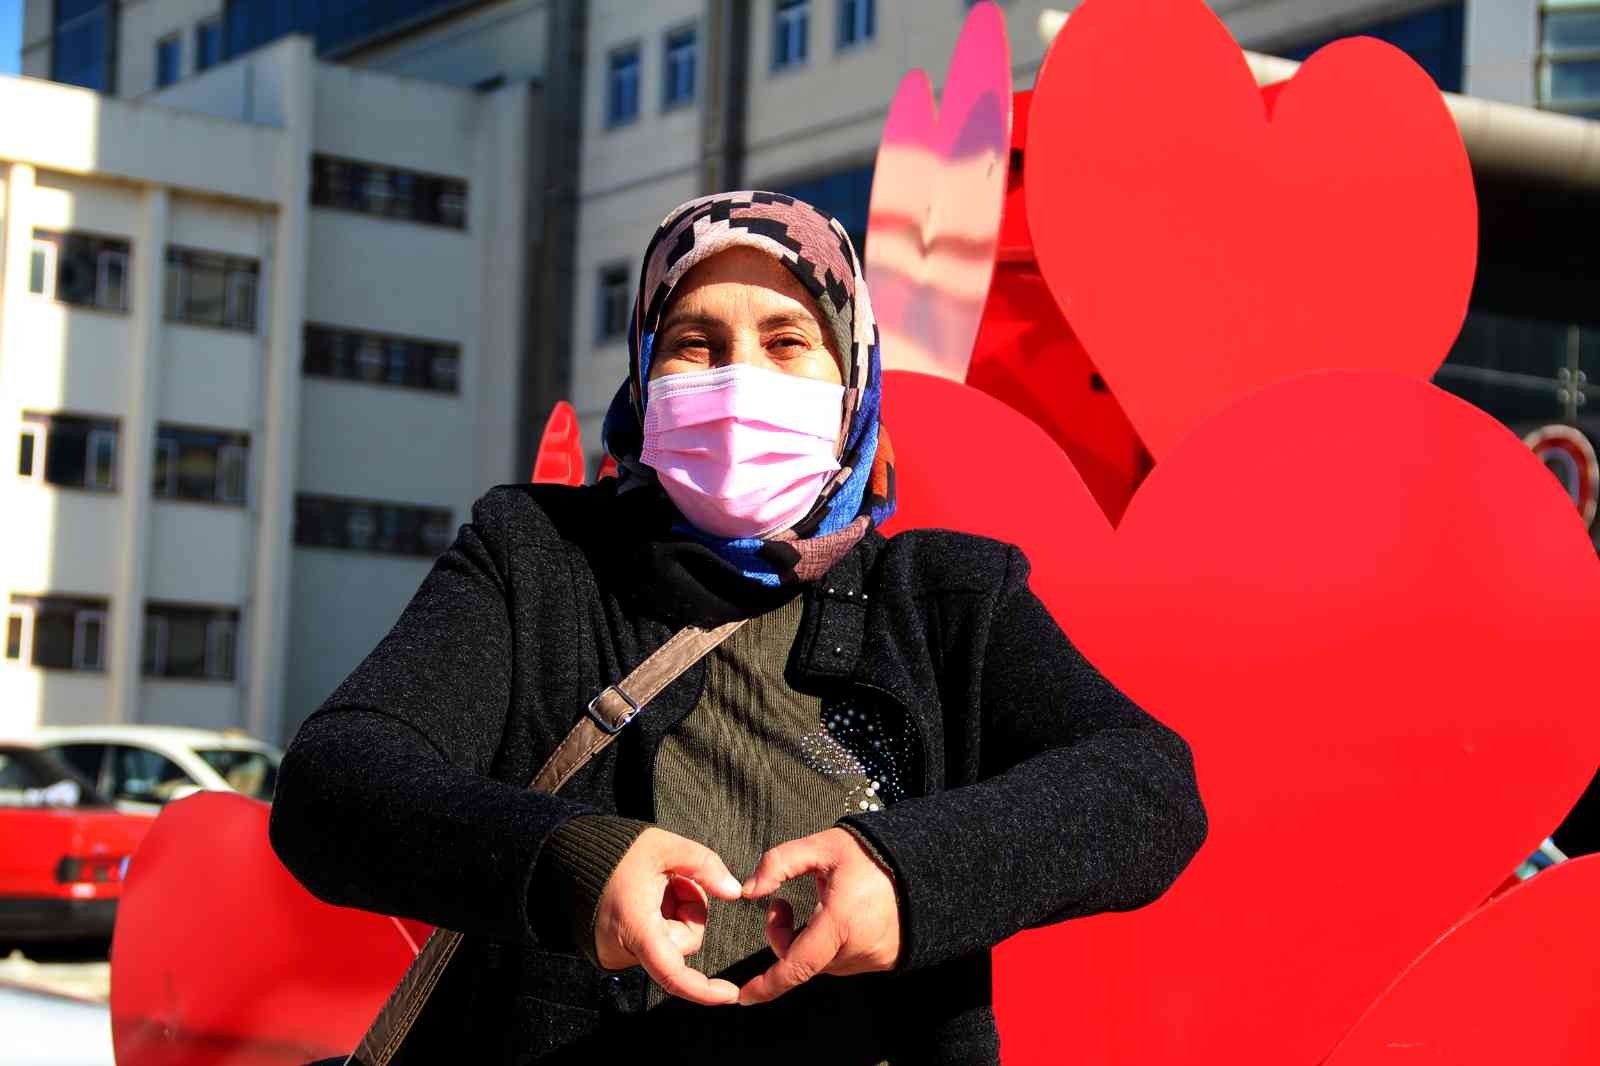 Antalya’nın ilk kalp nakilli hastası ’Ölüme gidiyorsun’ diyenlere inat kalp nakli oldu, 24 yıldır yaşıyor